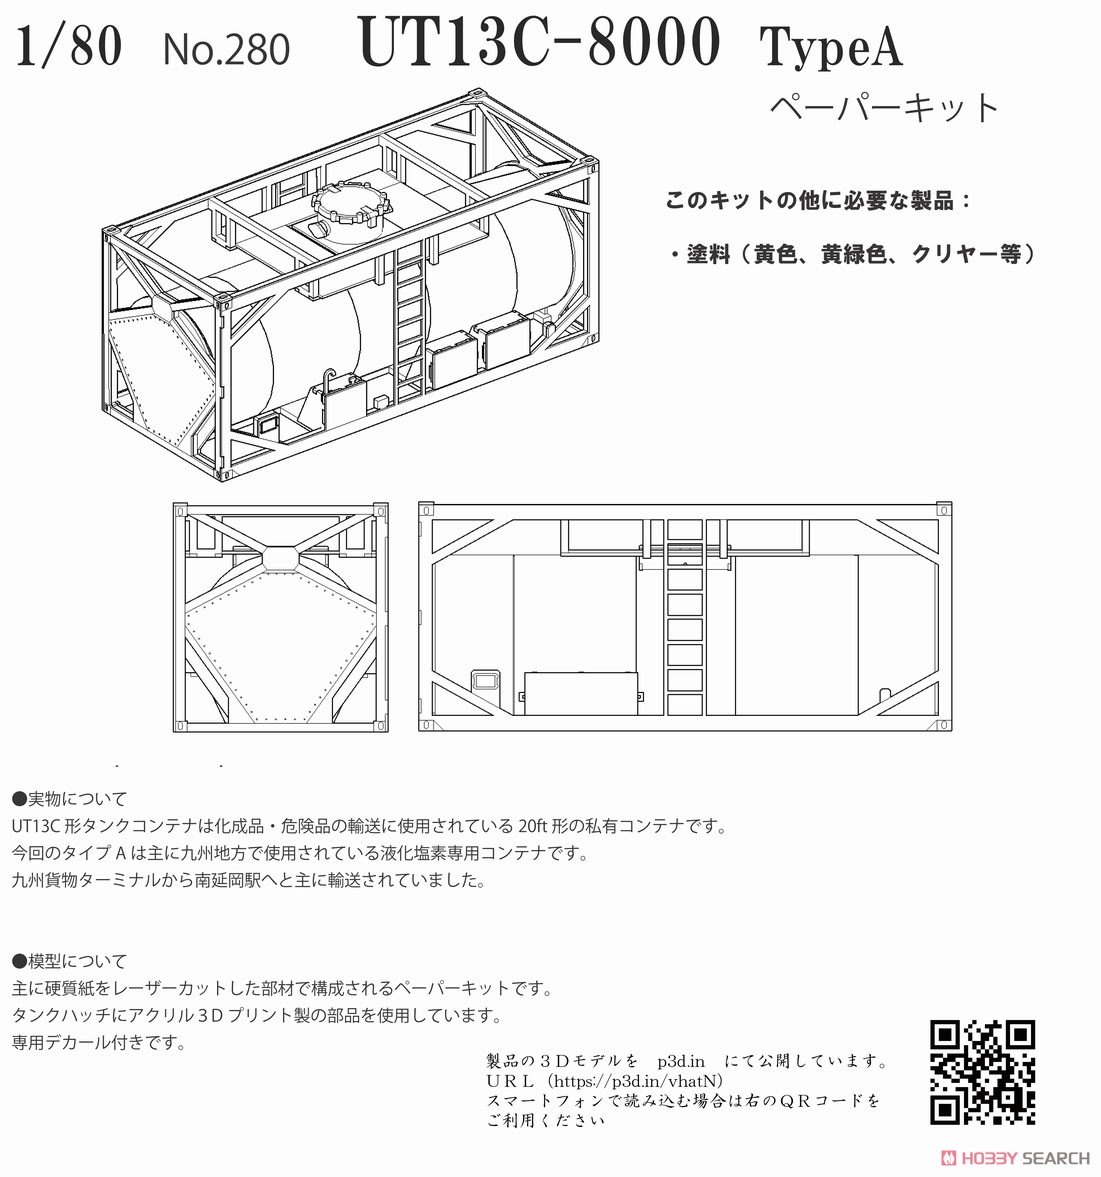 16番(HO) UT13C-8000 TypeA タンクコンテナ ペーパーキット (組み立てキット) (鉄道模型) その他の画像1